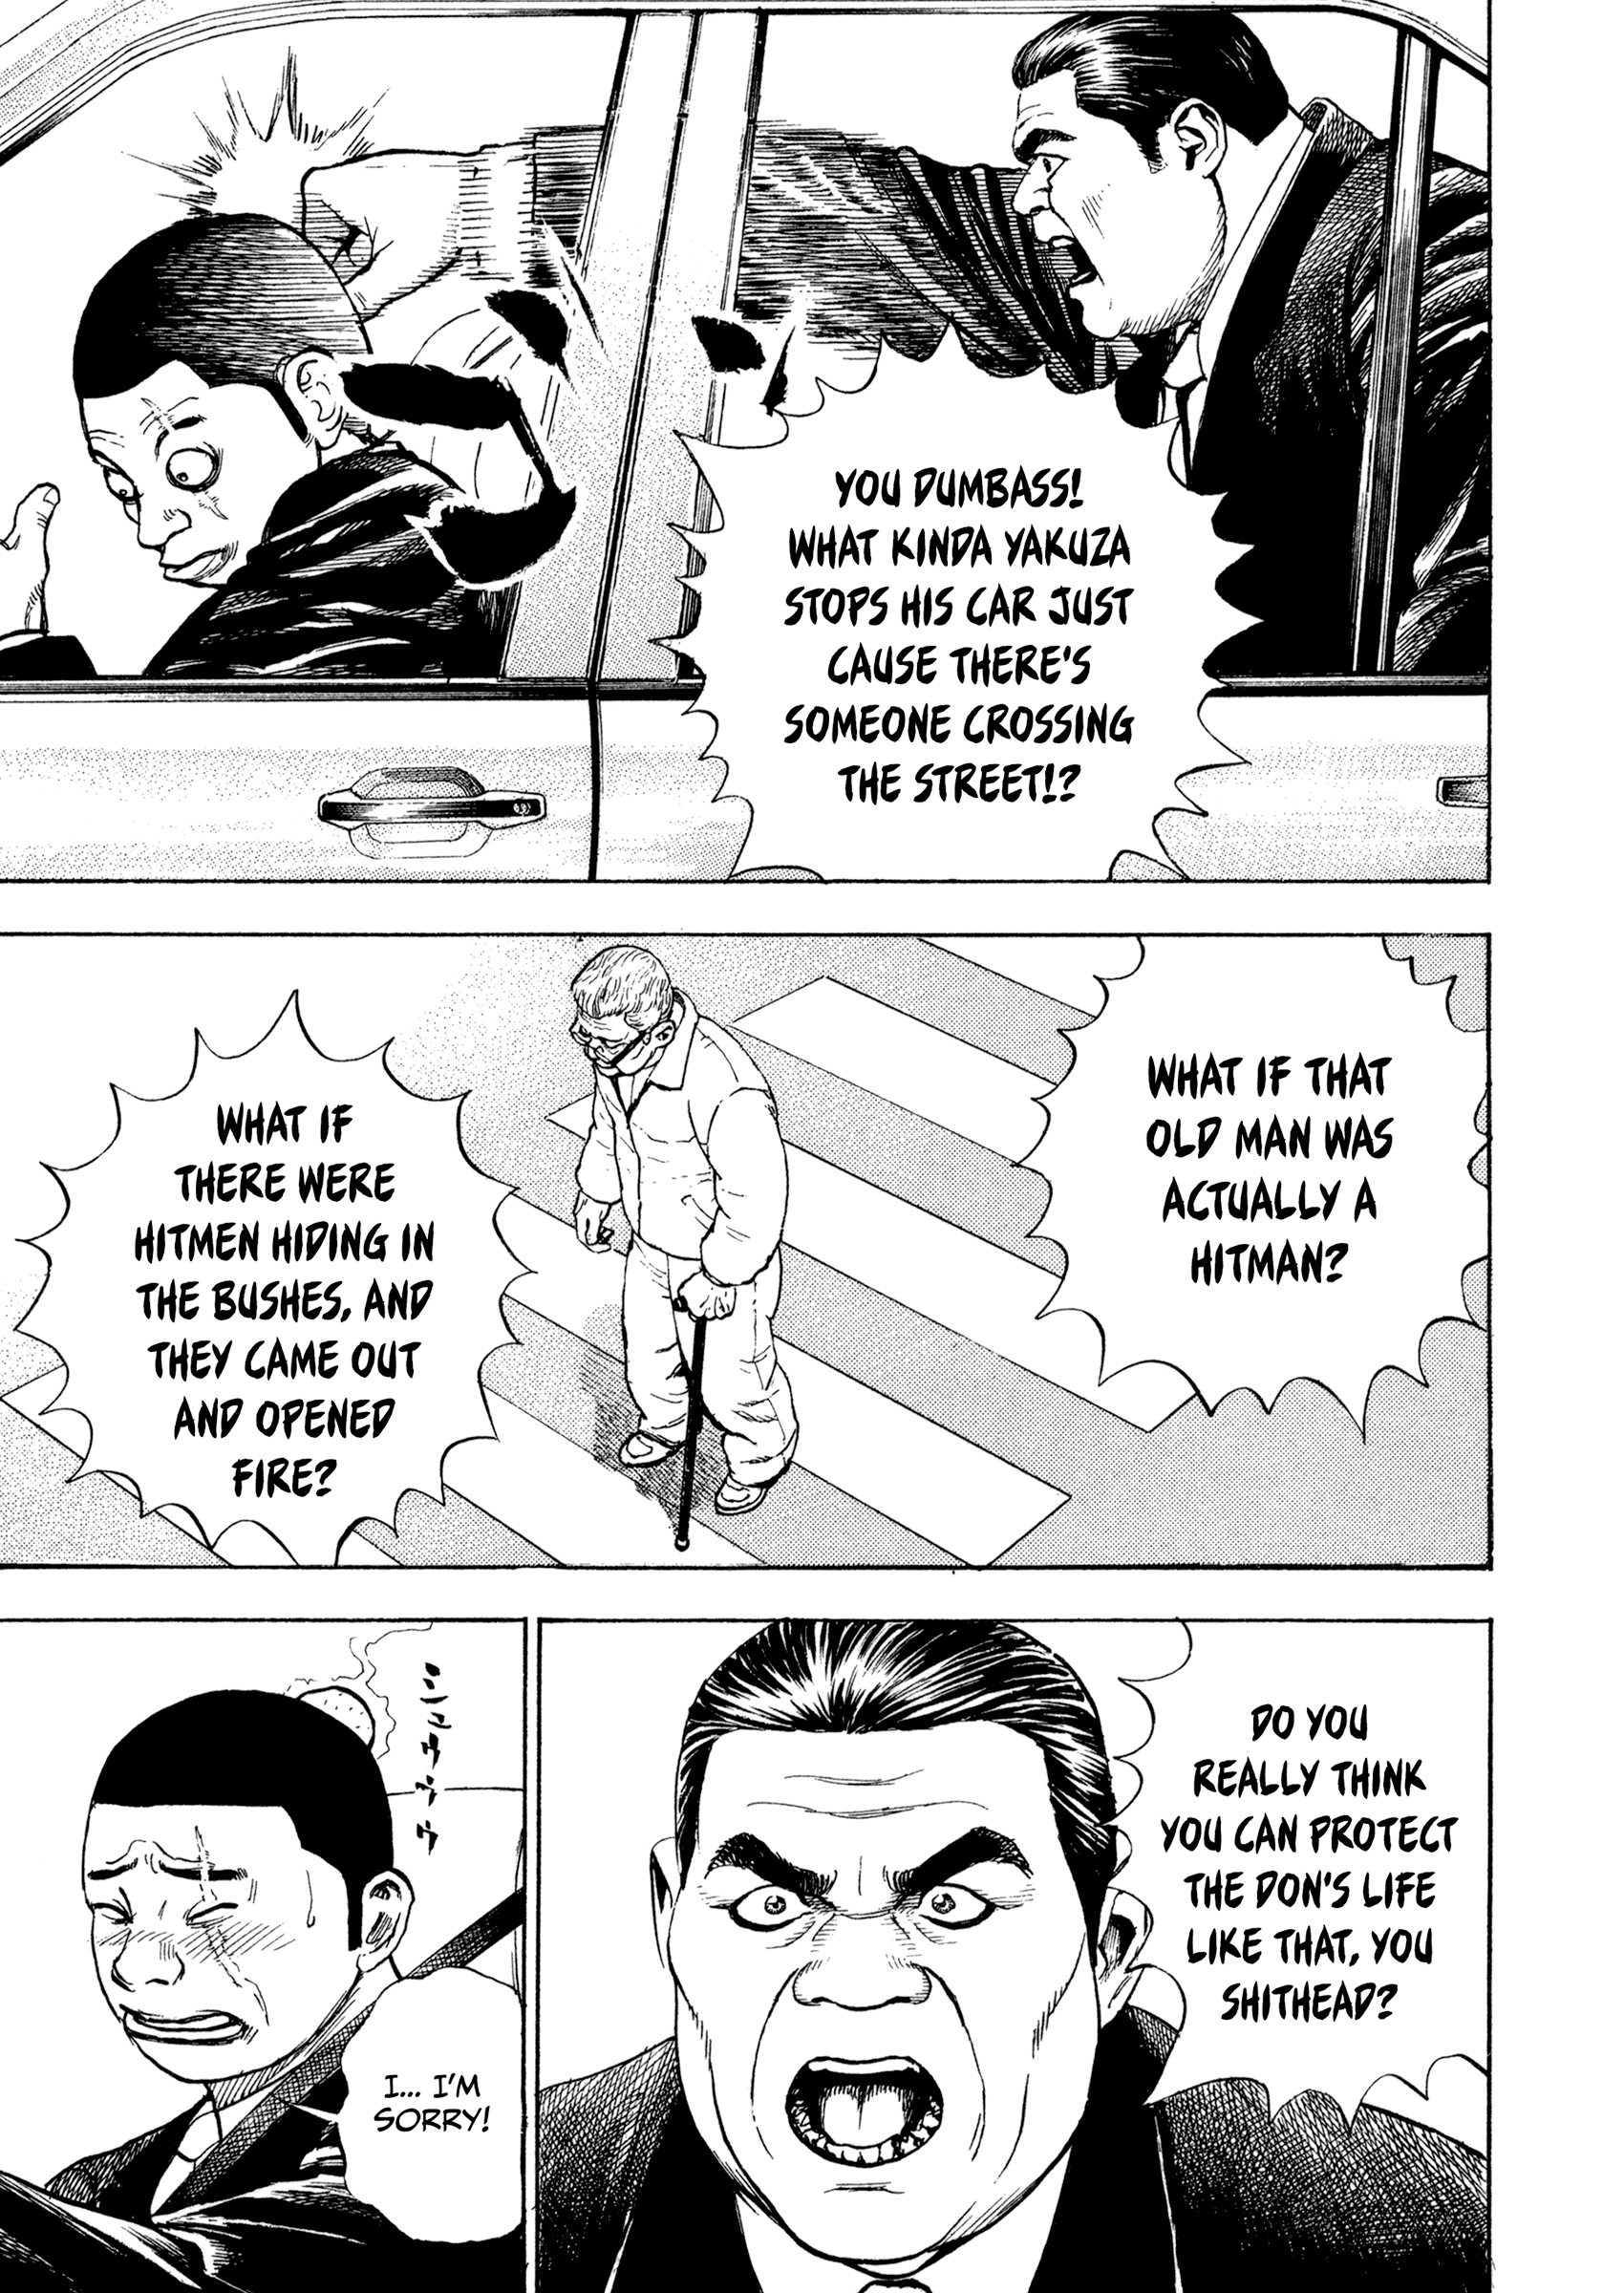 Kizu Darake No Jinsei Vol.14 Chapter 106: The Yakuza Way - Picture 3